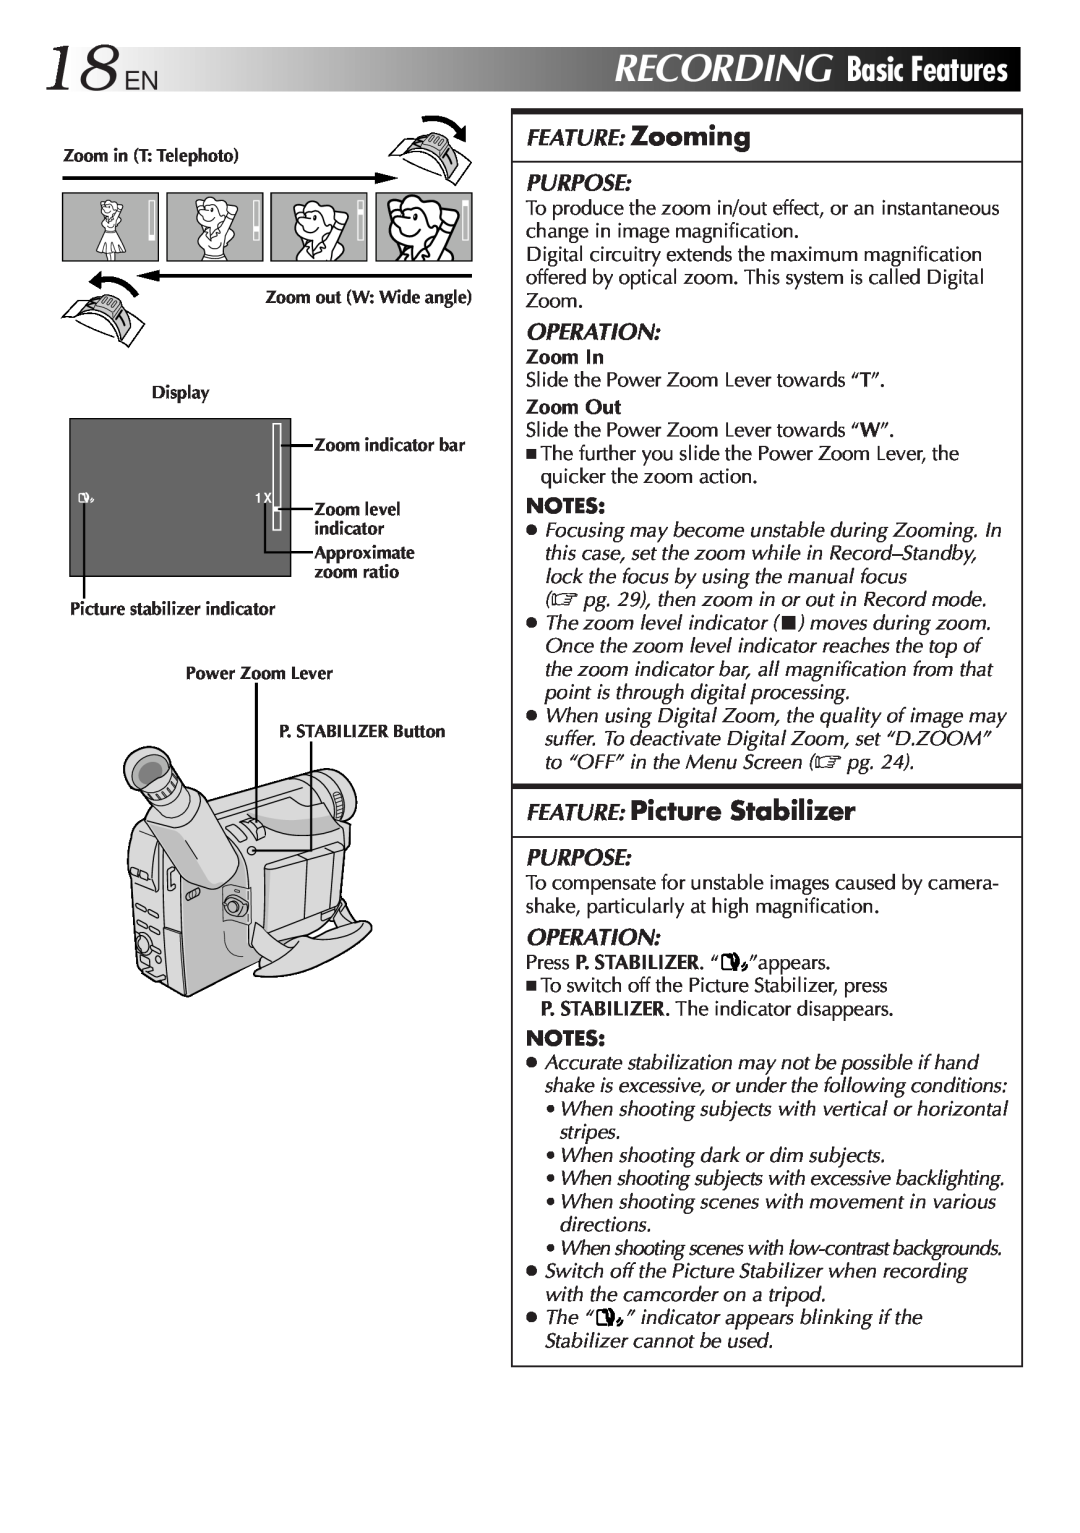 JVC GR-SXM321 specifications 18ENRECORDINGBasicFeatures, FEATURE Picture Stabilizer 